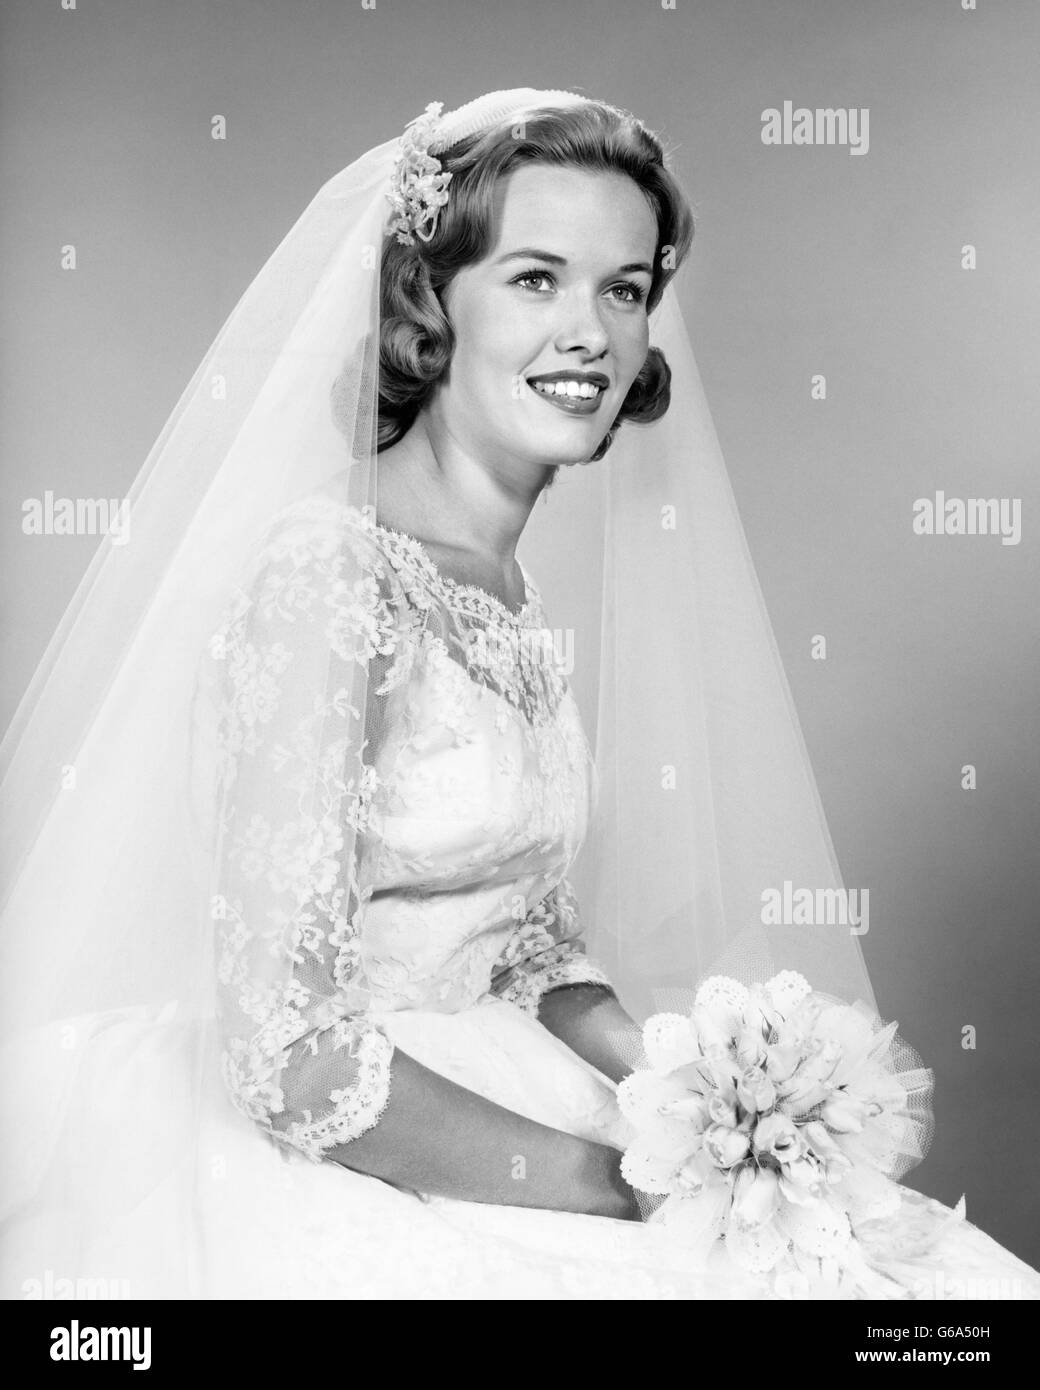 1960s PORTRAIT SMILING WOMAN BRIDE LACE DRESS NET VEIL HOLDING BRIDAL BOUQUET Stock Photo